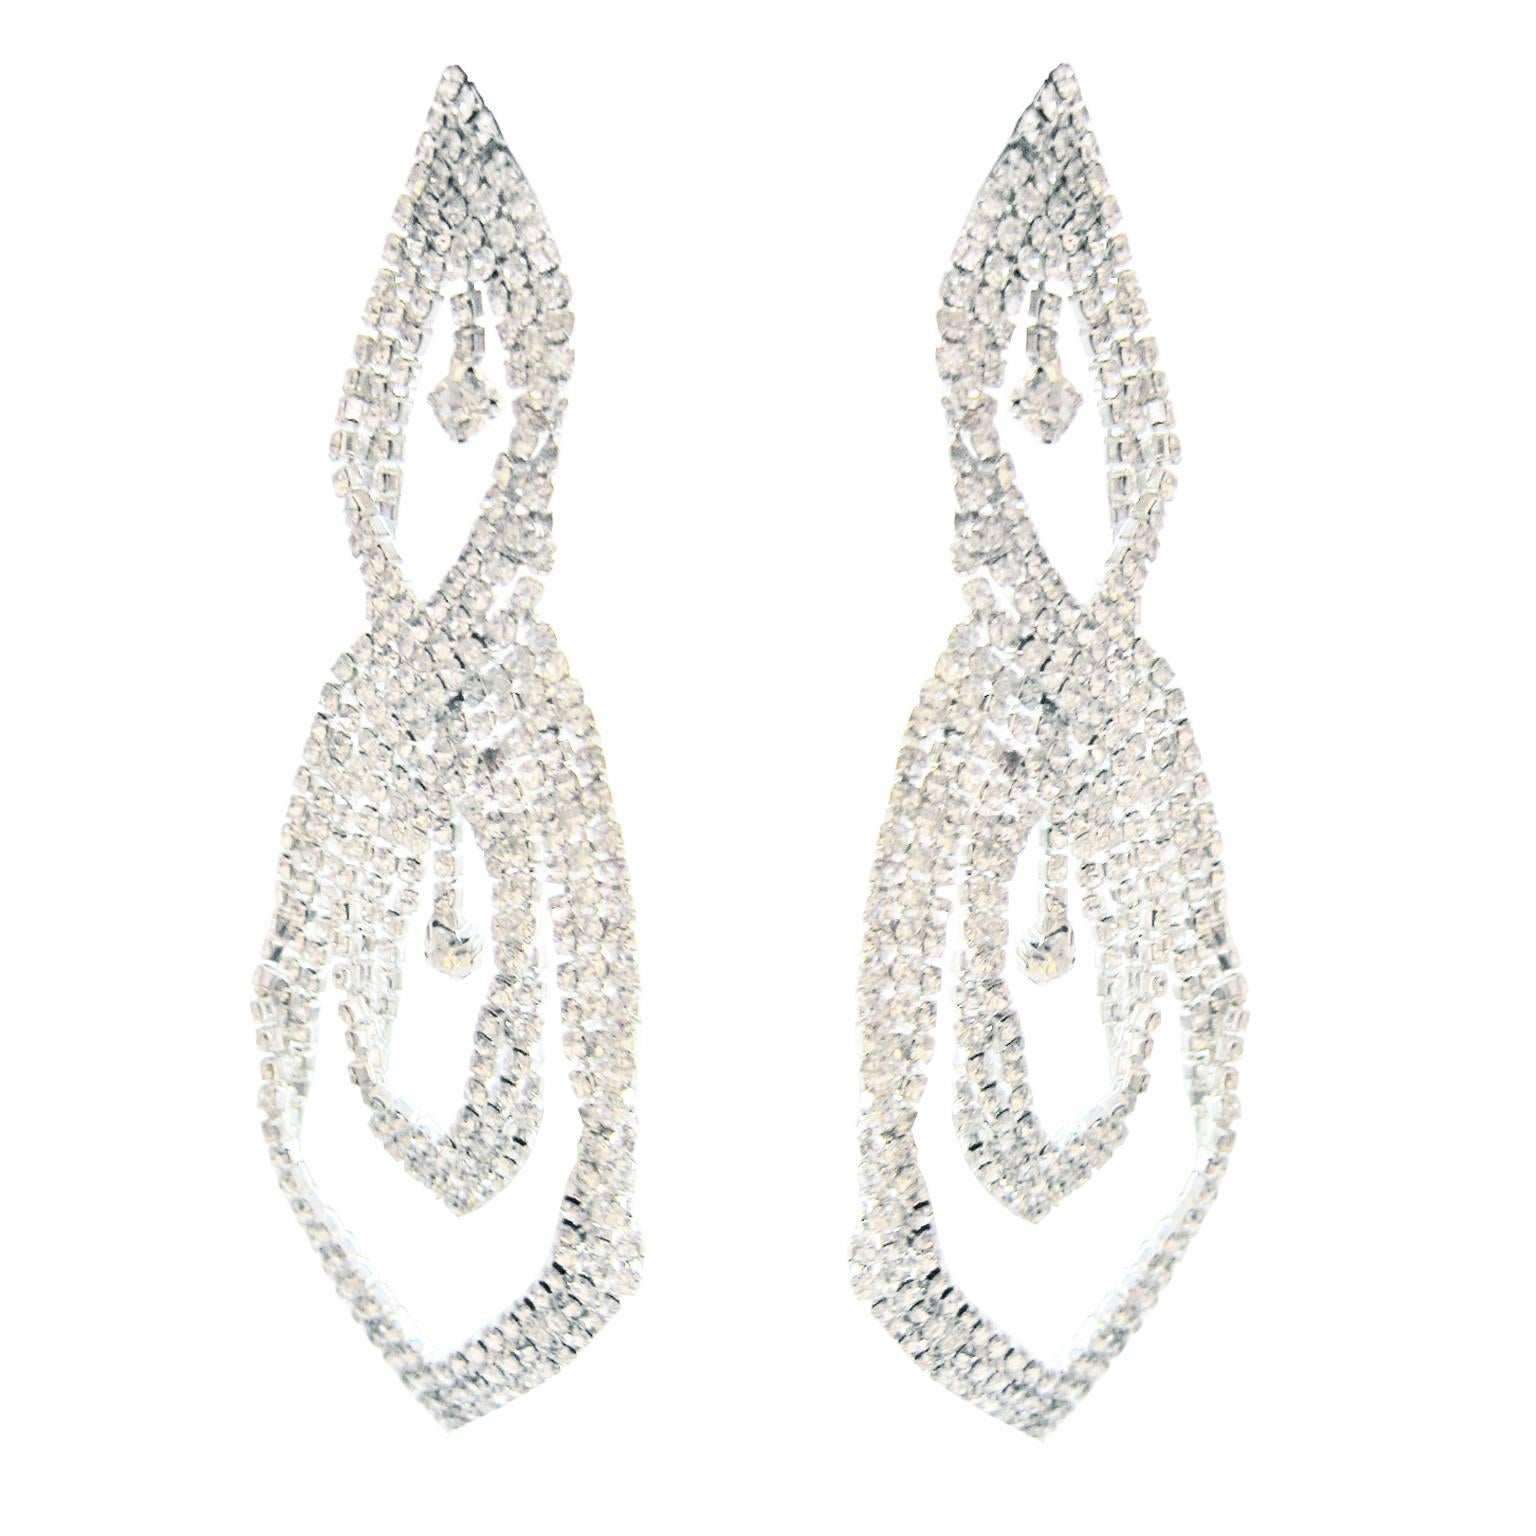 Beautiful 1970s faux diamond large drop pierced earrings, 11 cm  x  5 cm.
